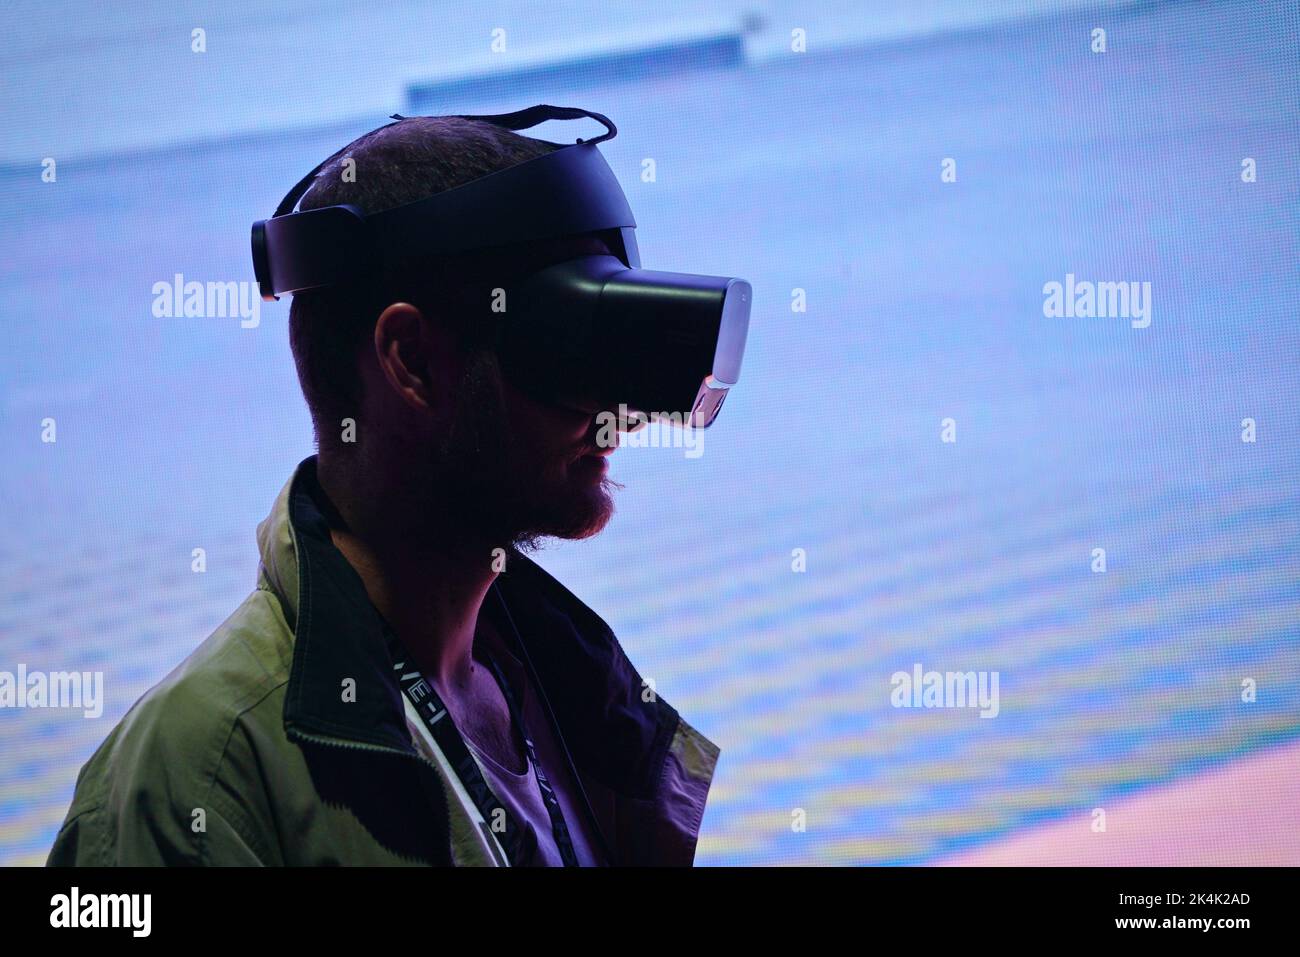 Mostra di realtà virtuale. Il giovane indossa occhiali per la realtà virtuale e sperimenta un incontro metaverso. Torino, Italia - Settembre 2022 Foto Stock